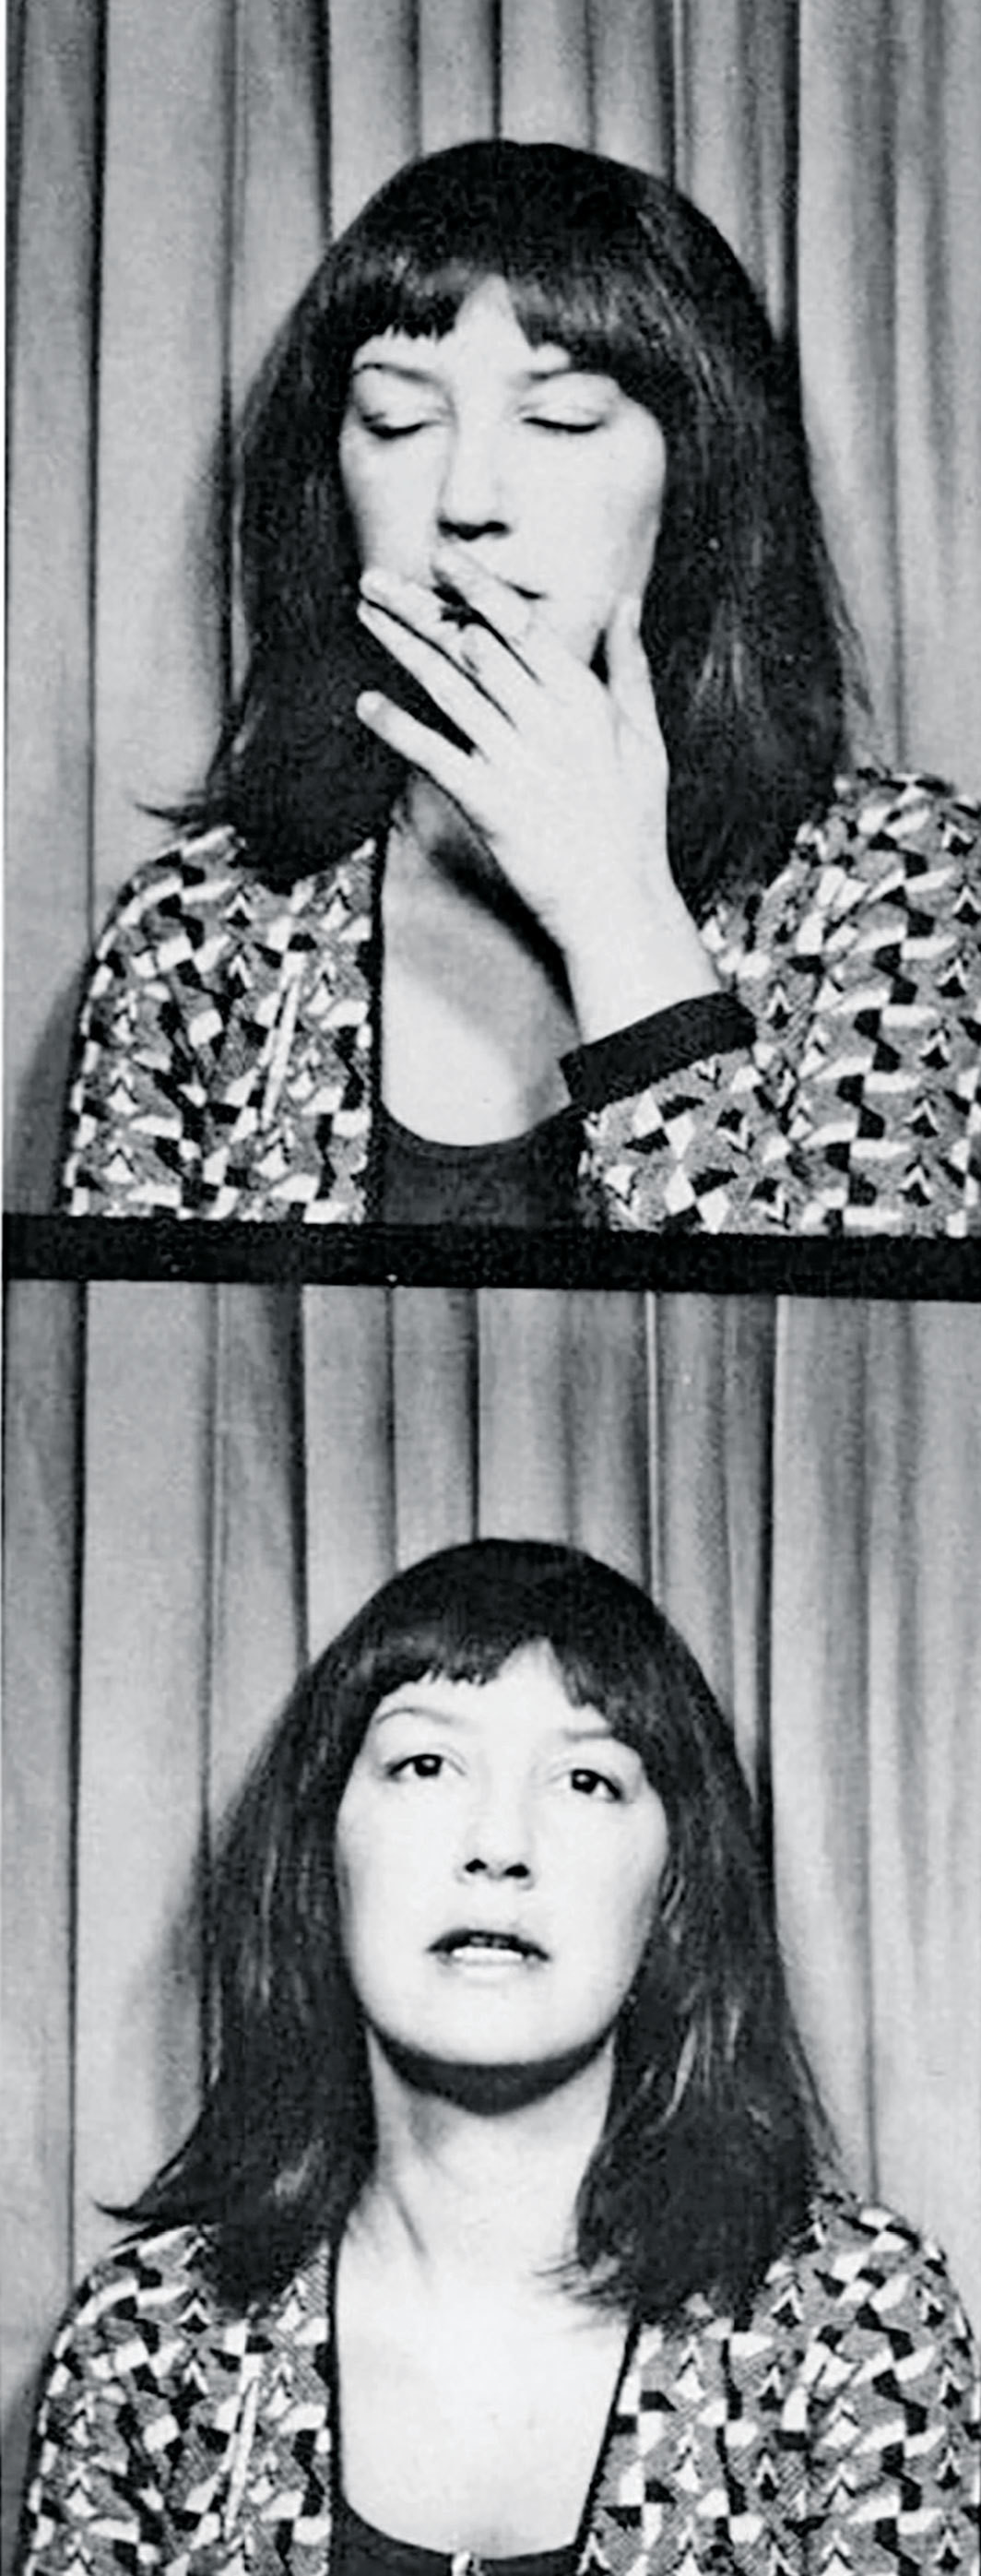 Eve Babitz, 1976.